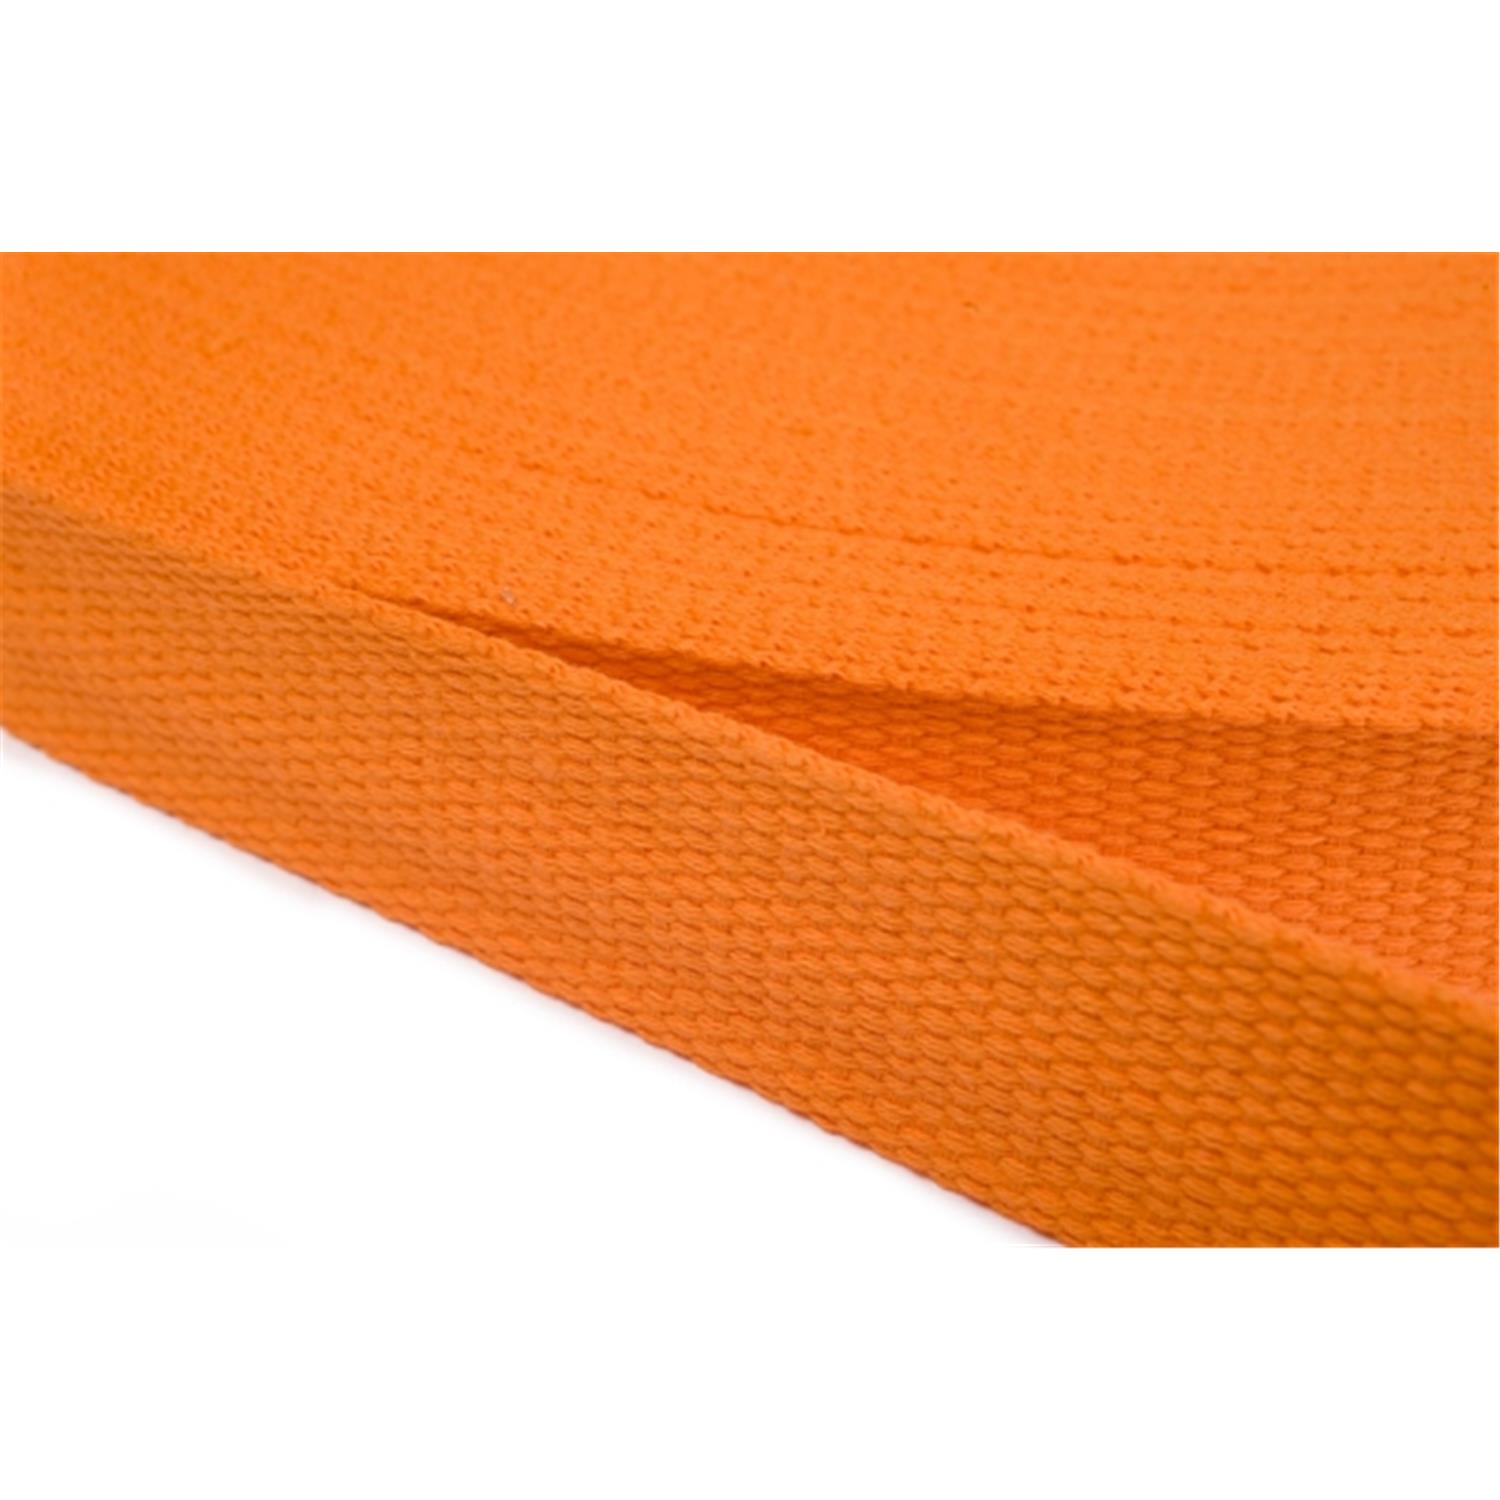 Gurtband aus Baumwolle 10mm in 20 Farben 06 - orange 12 Meter